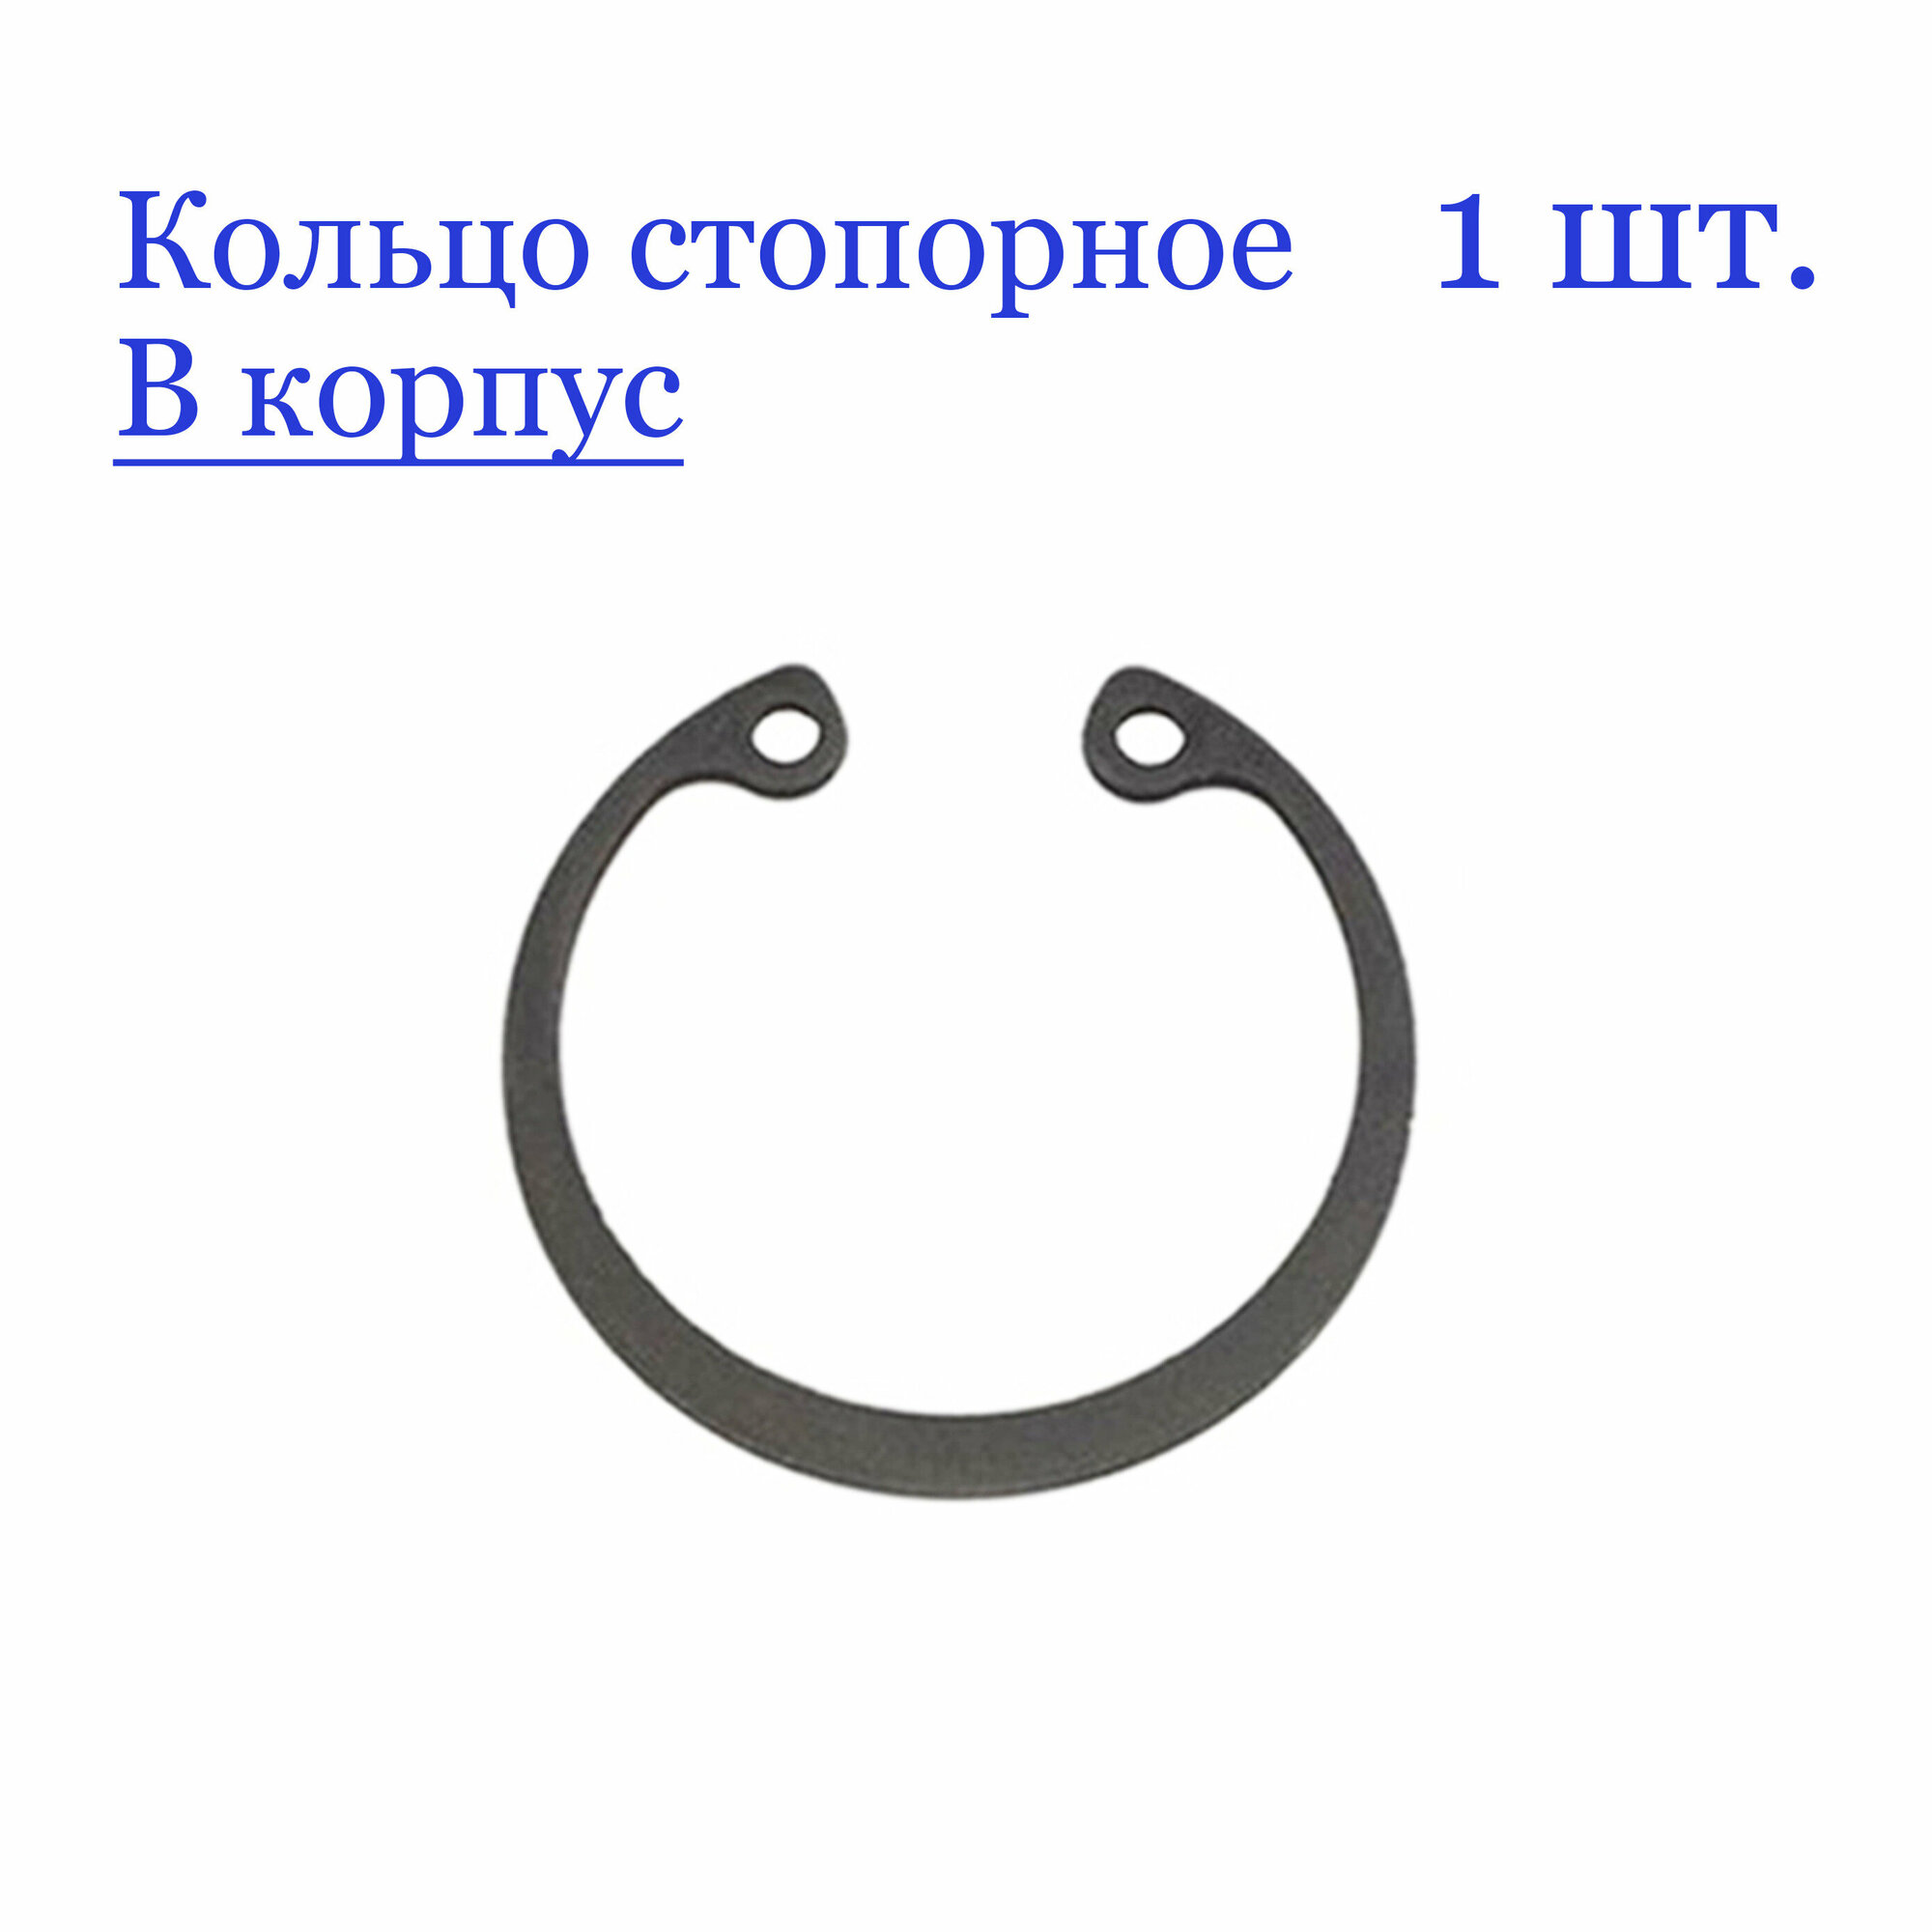 Кольцо стопорное, внутреннее, в корпус 40 мм. х 1,75 мм, DIN 472 (1 шт.)